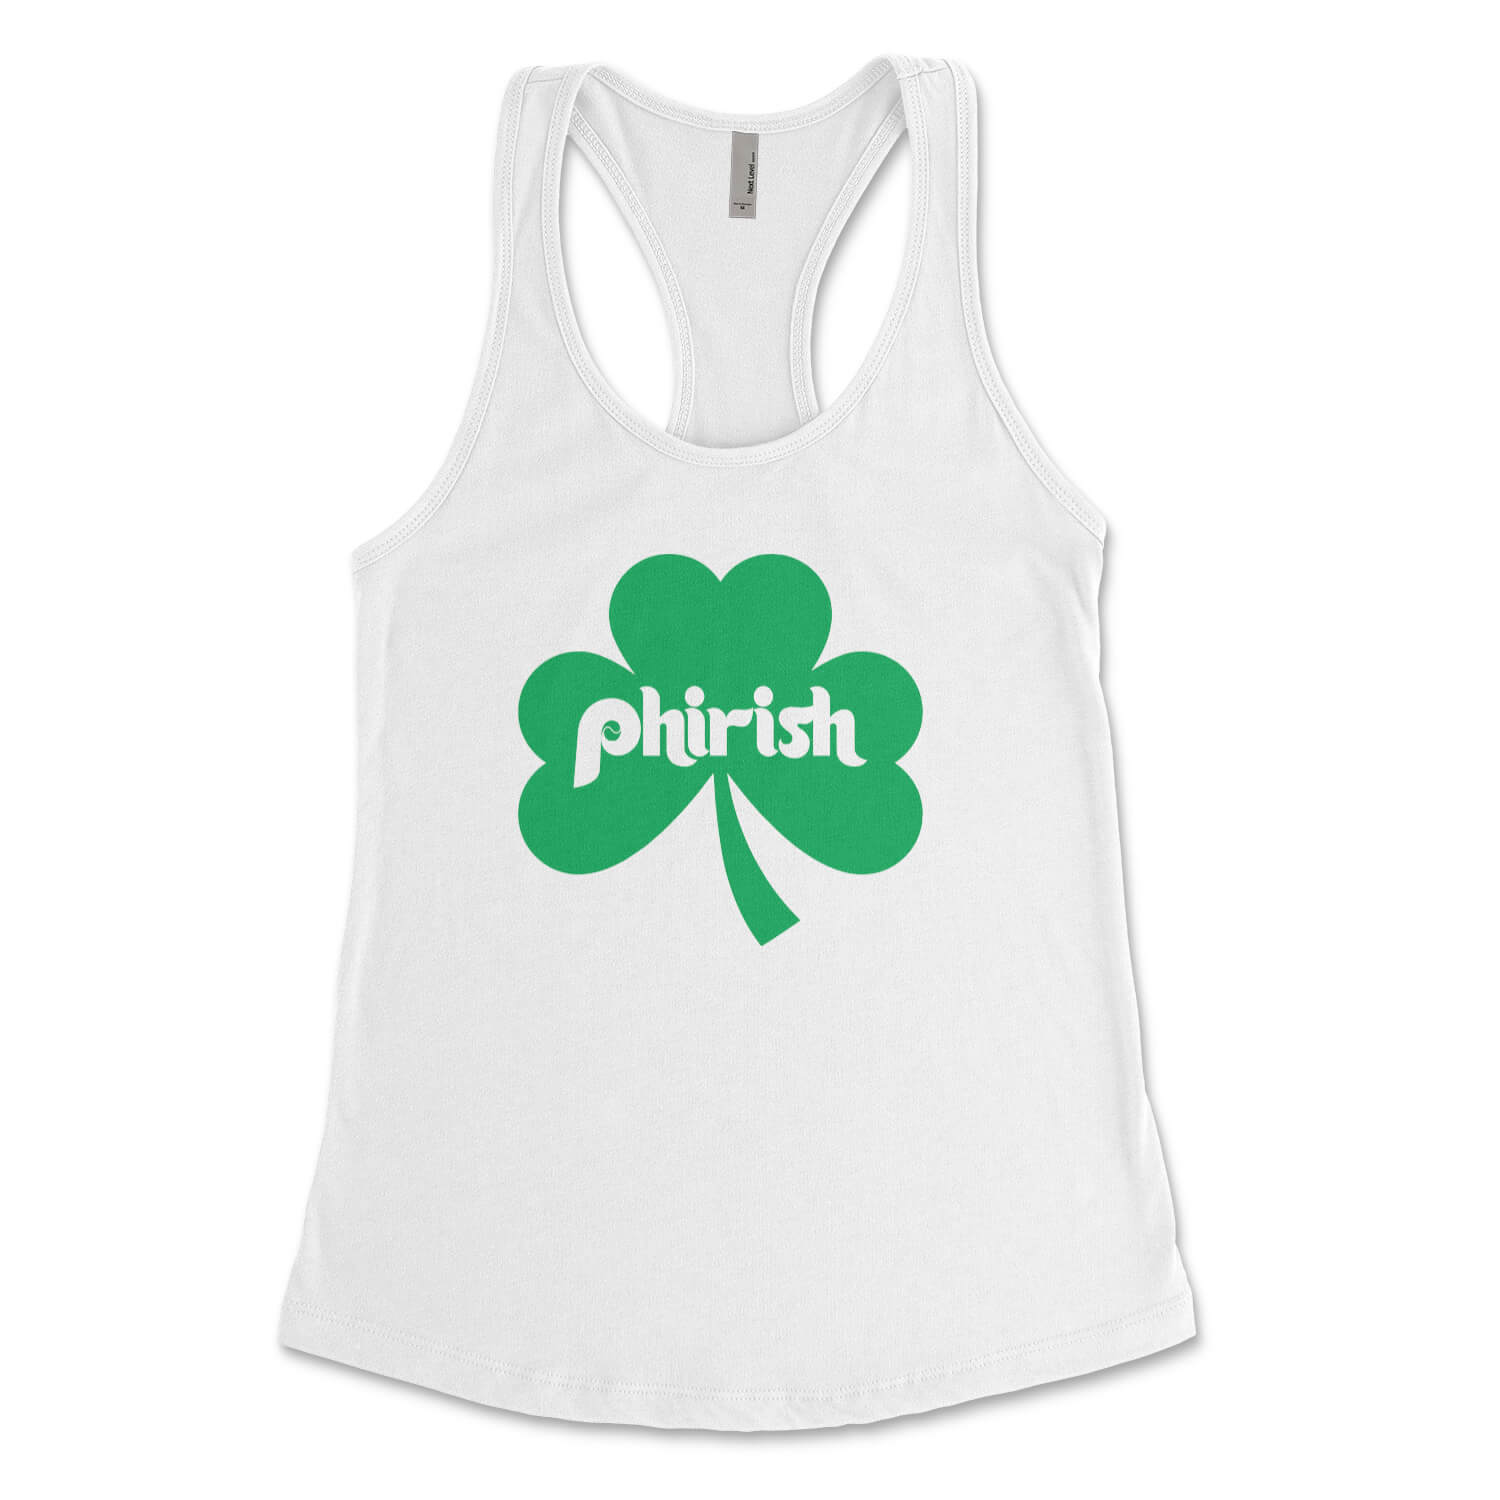 Philadelphia Irish Phirish shamrock st. paddy's day white womens tank top from Phillygoat